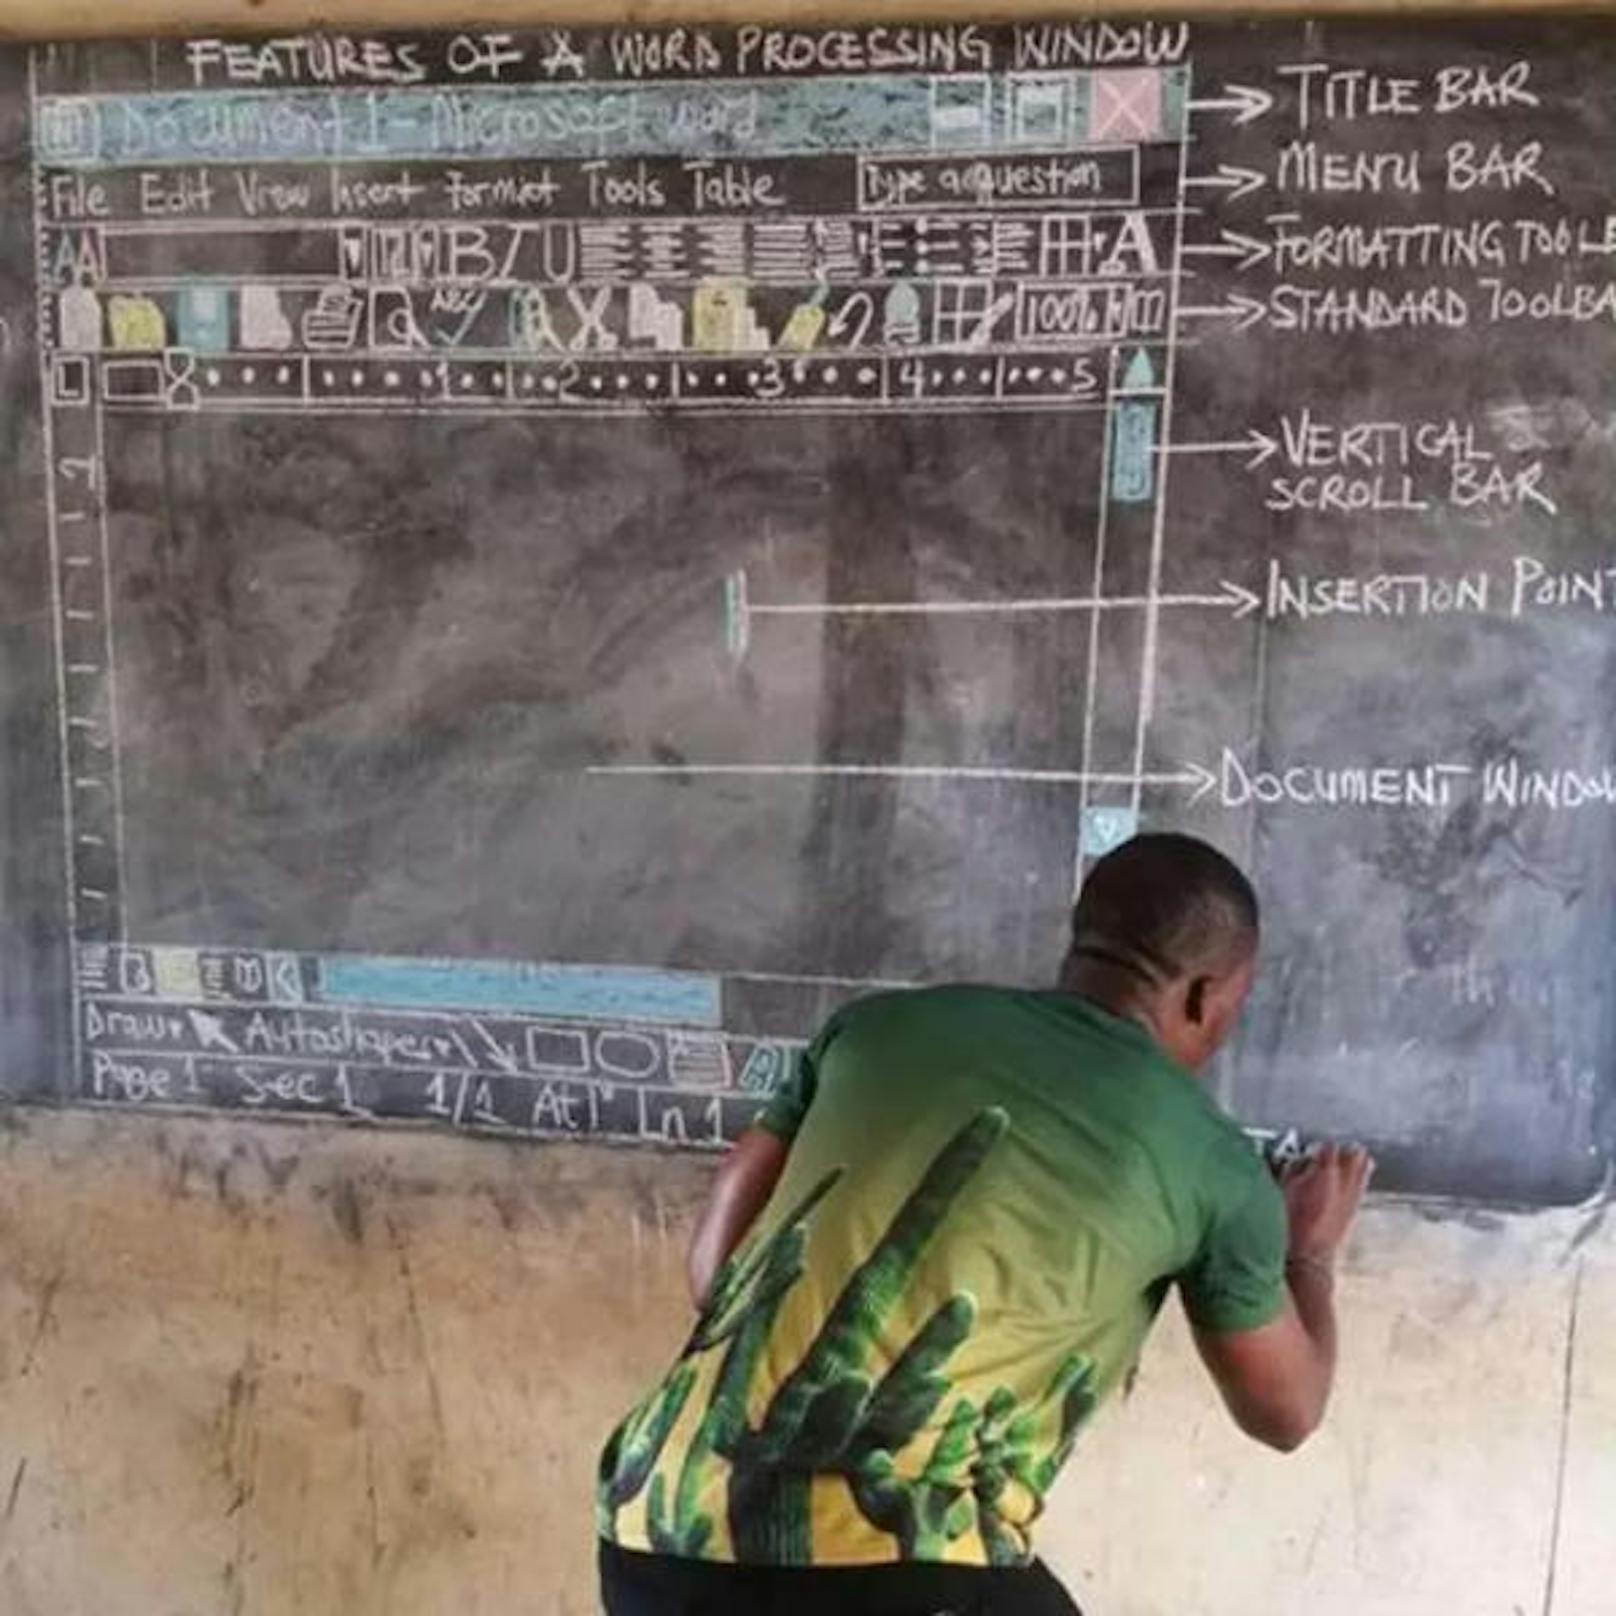 Der Lehrer Owura Kwandwo unterrichtet in Ghana seine Schüler in Informatik. Das Problem dabei ist, dass ihm dafür kein Computer zur Verfügung steht. Statt aufzugeben, begab er sich an seine Wandtafel und zeichnete das Programm Microsoft Word mit Kreide. Wie "Pulse.com.gh" berichtet, ist es im Land normal, dass die Lehrer für den Unterricht keine Computer haben. Weil sein Bild auf Facebook von vielen Menschen gesehen wurde, erhält die Schule nun Spenden in Form von Laptops und Projektoren.